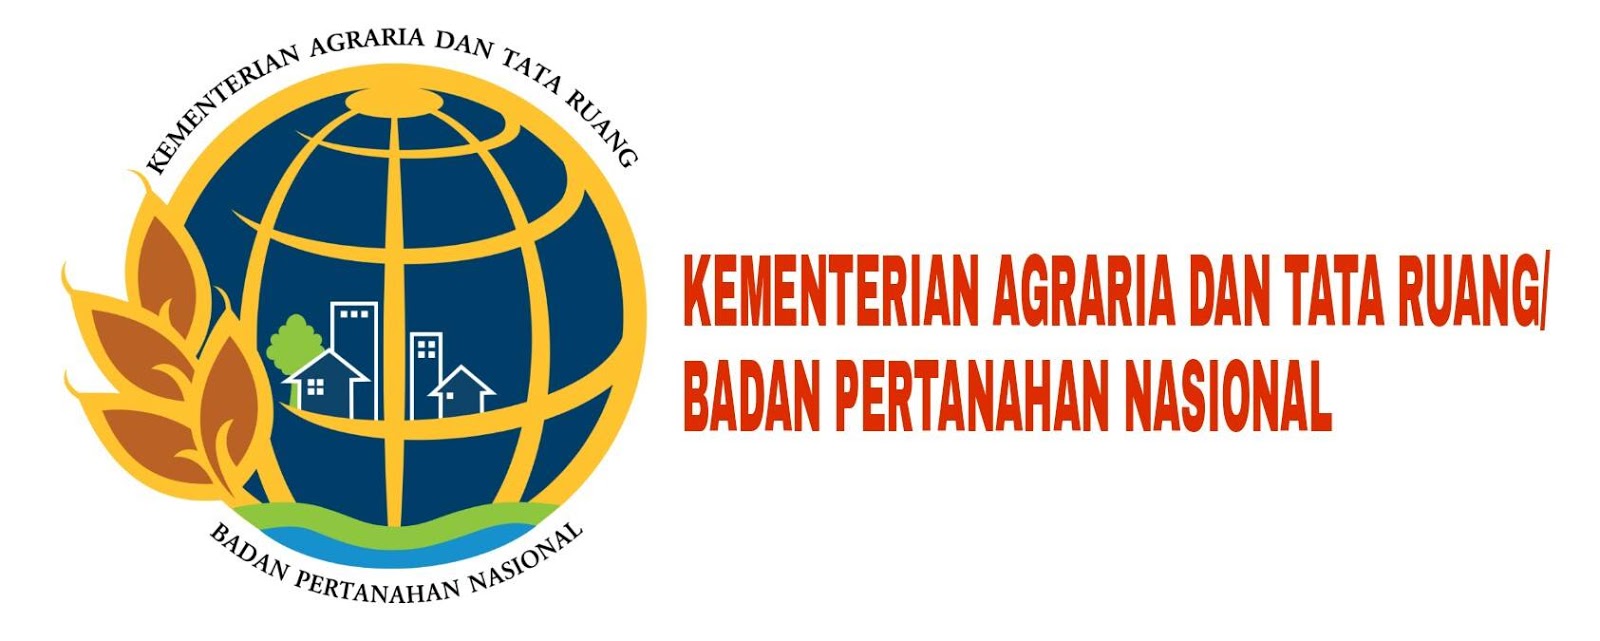 ATR BPN Aceh PEDULI LINGKUNGAN